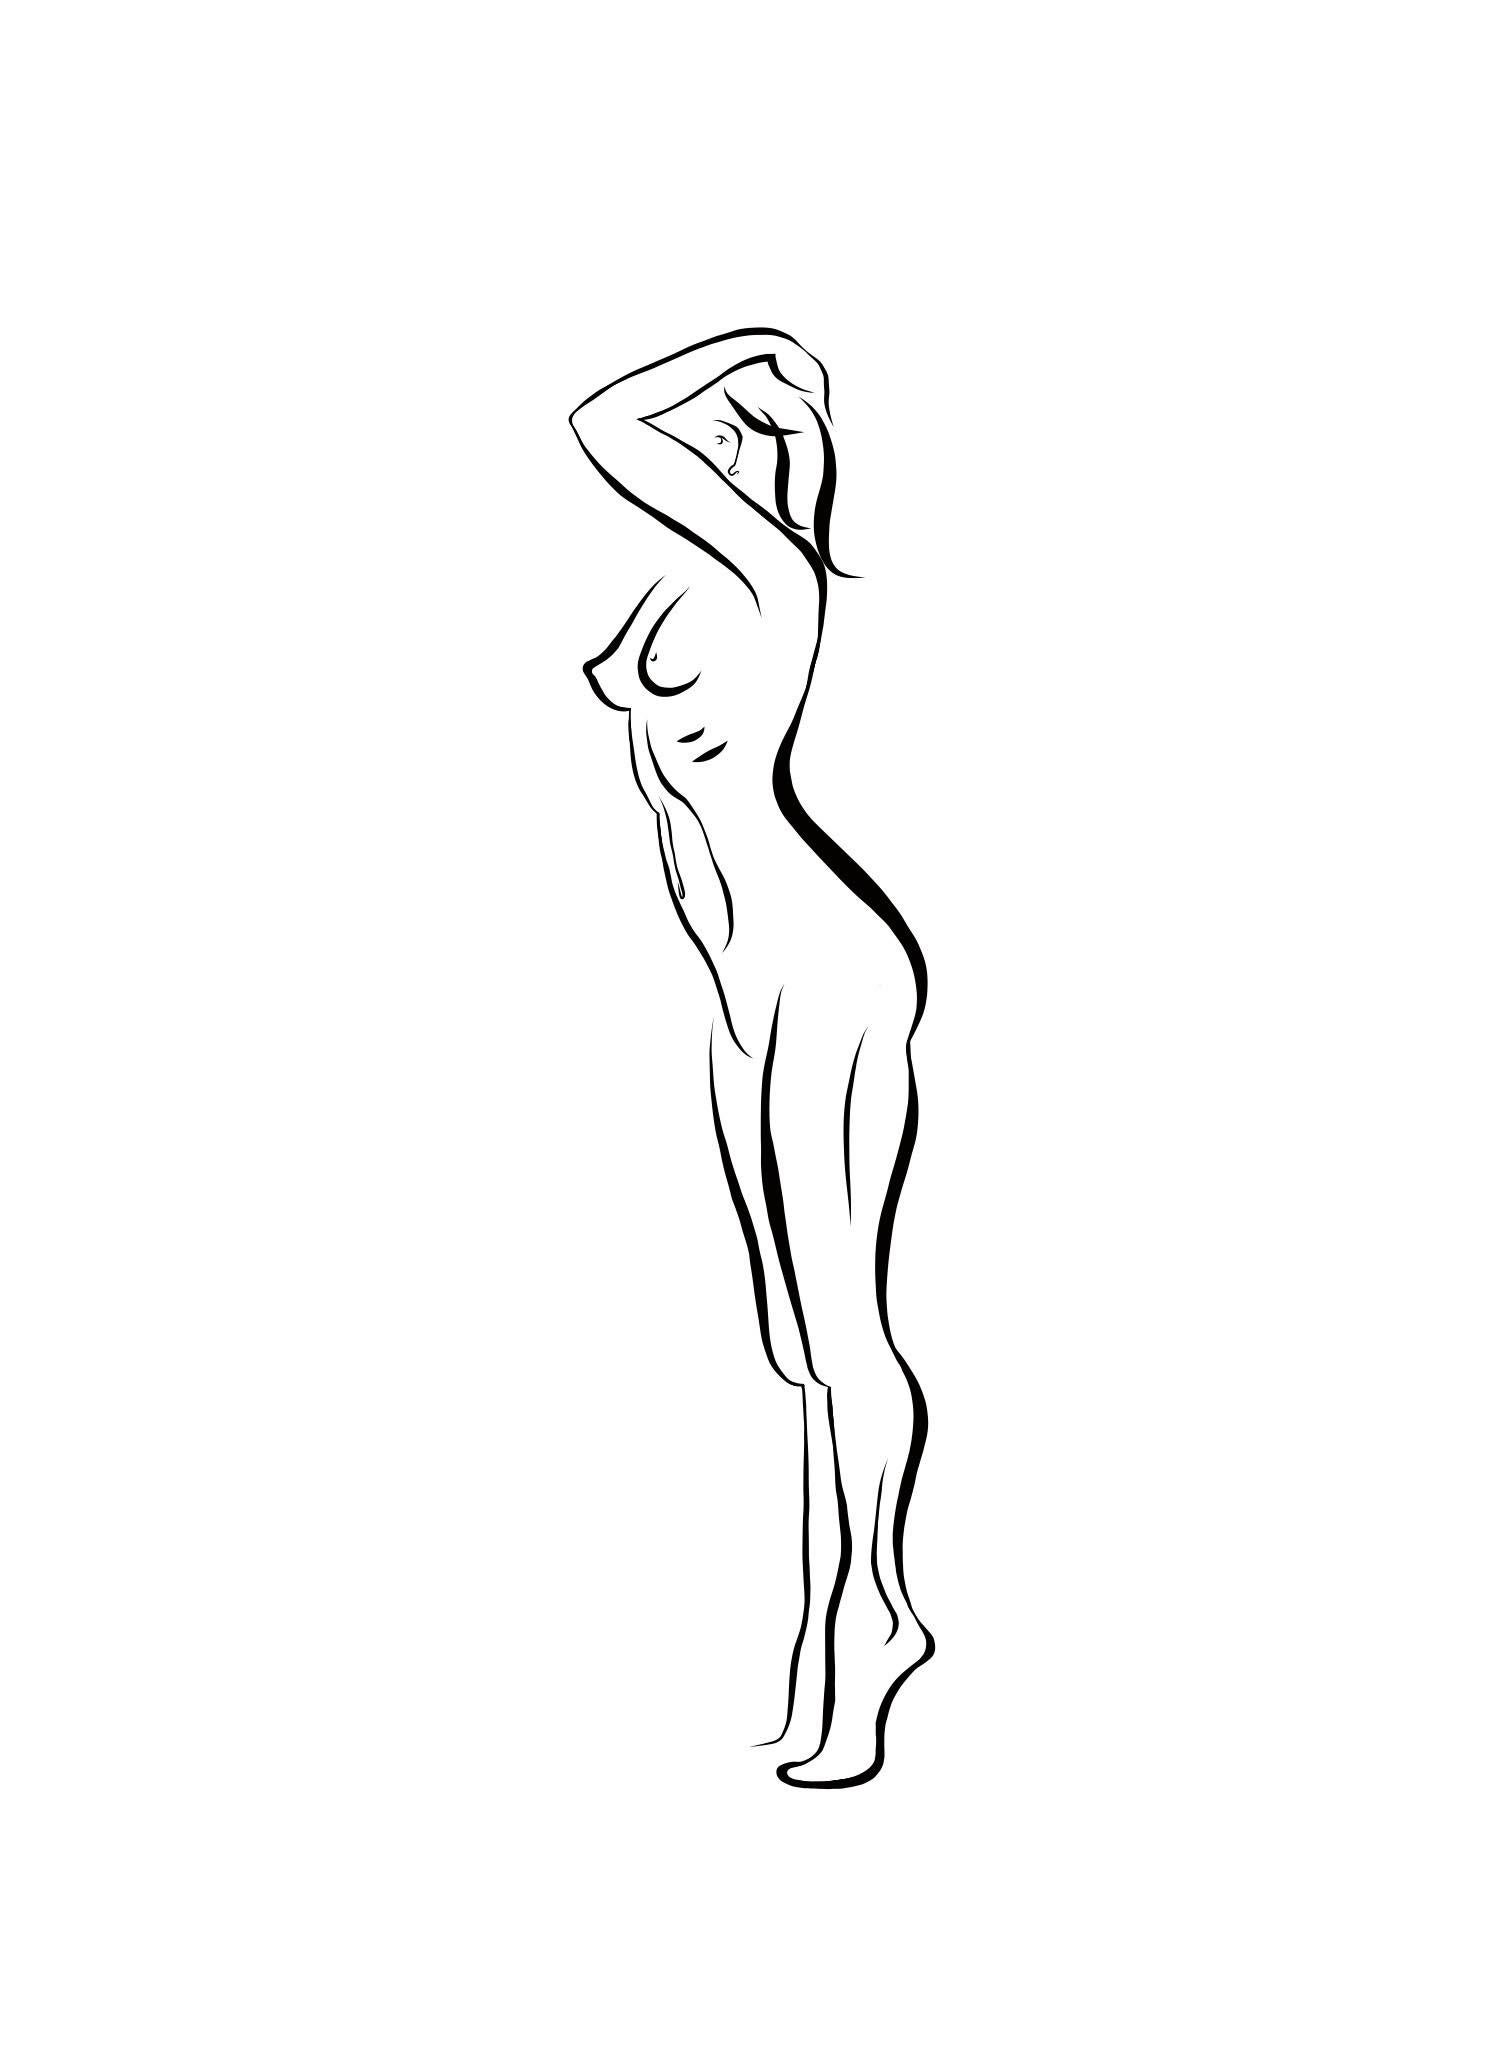 Haiku #29, 1/50 - Digital Vector Drawing Standing Female Nude Woman Figure Tipto - Art by Michael Binkley